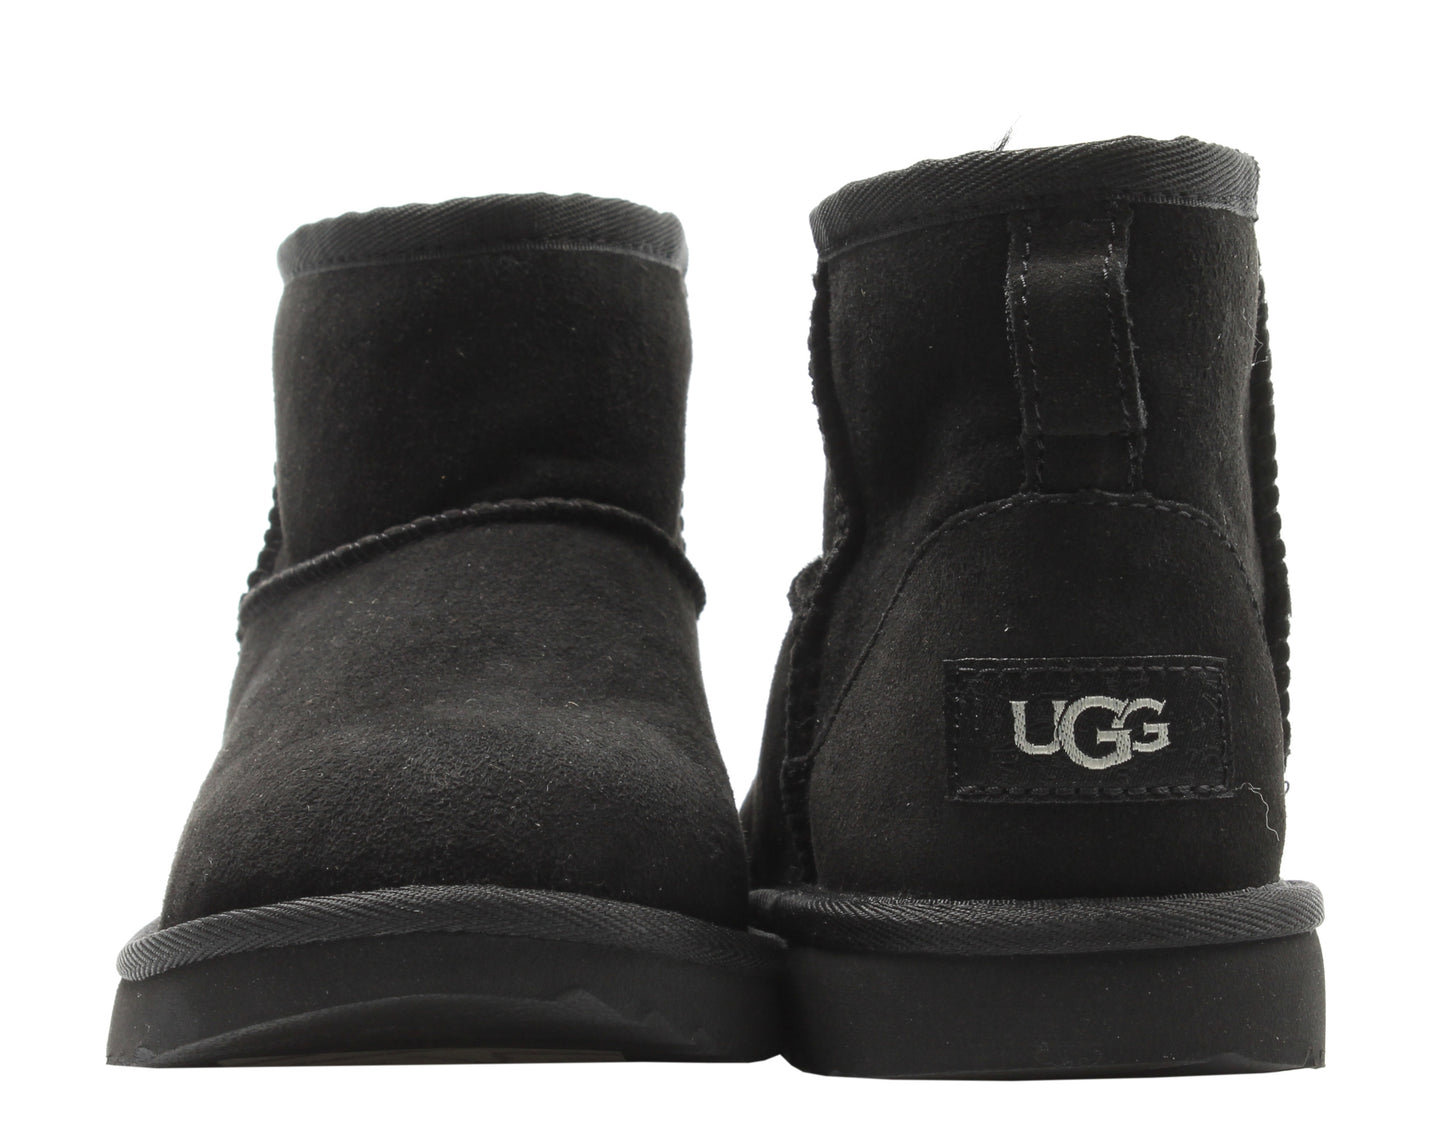 UGG Australia Classic Mini II Black Big Kids Boots 1017715K-BLK